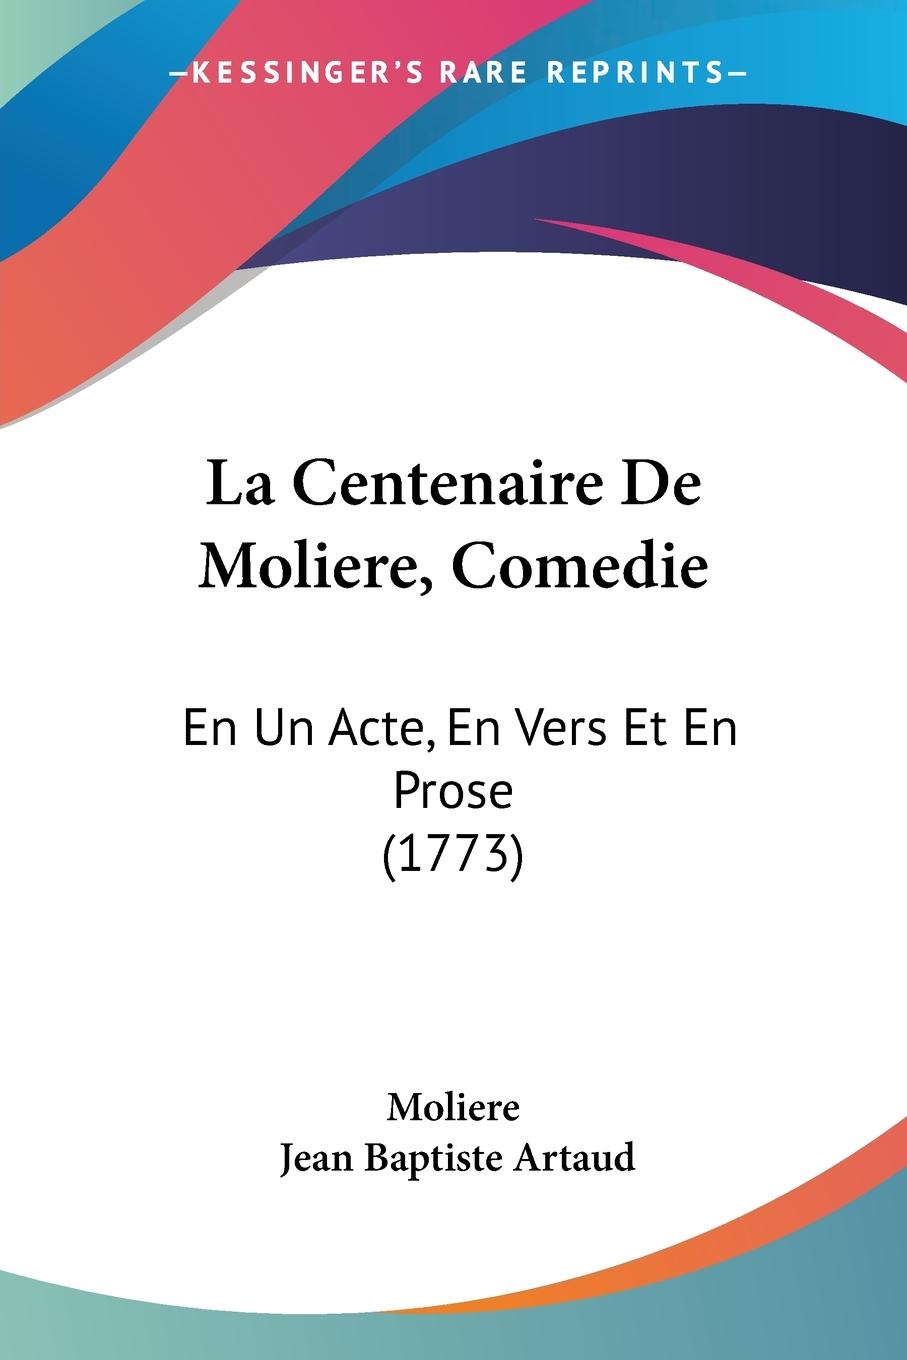 La Centenaire De Moliere, Comedie - Moliere Artaud, Jean Baptiste